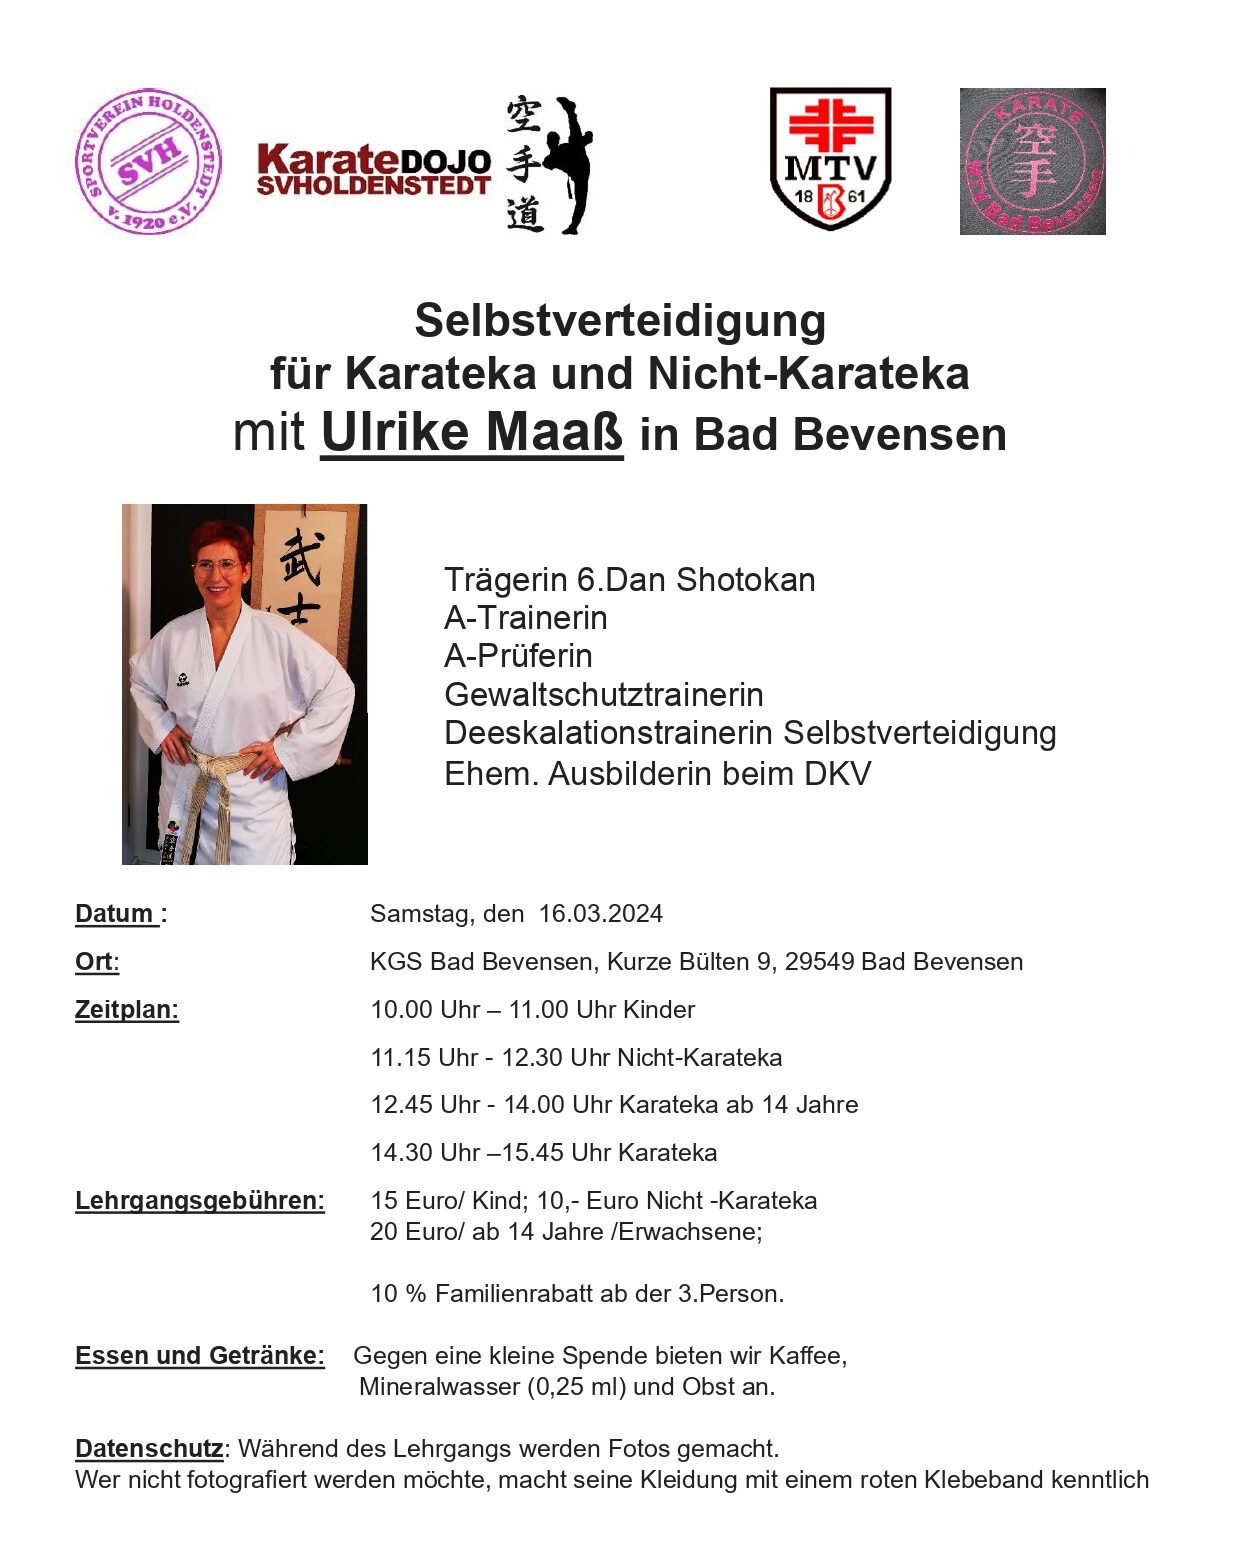 Selbstverteidigung für Karateka und Nicht-Karateka mit Ulrike Maaß in Bad Bevensen